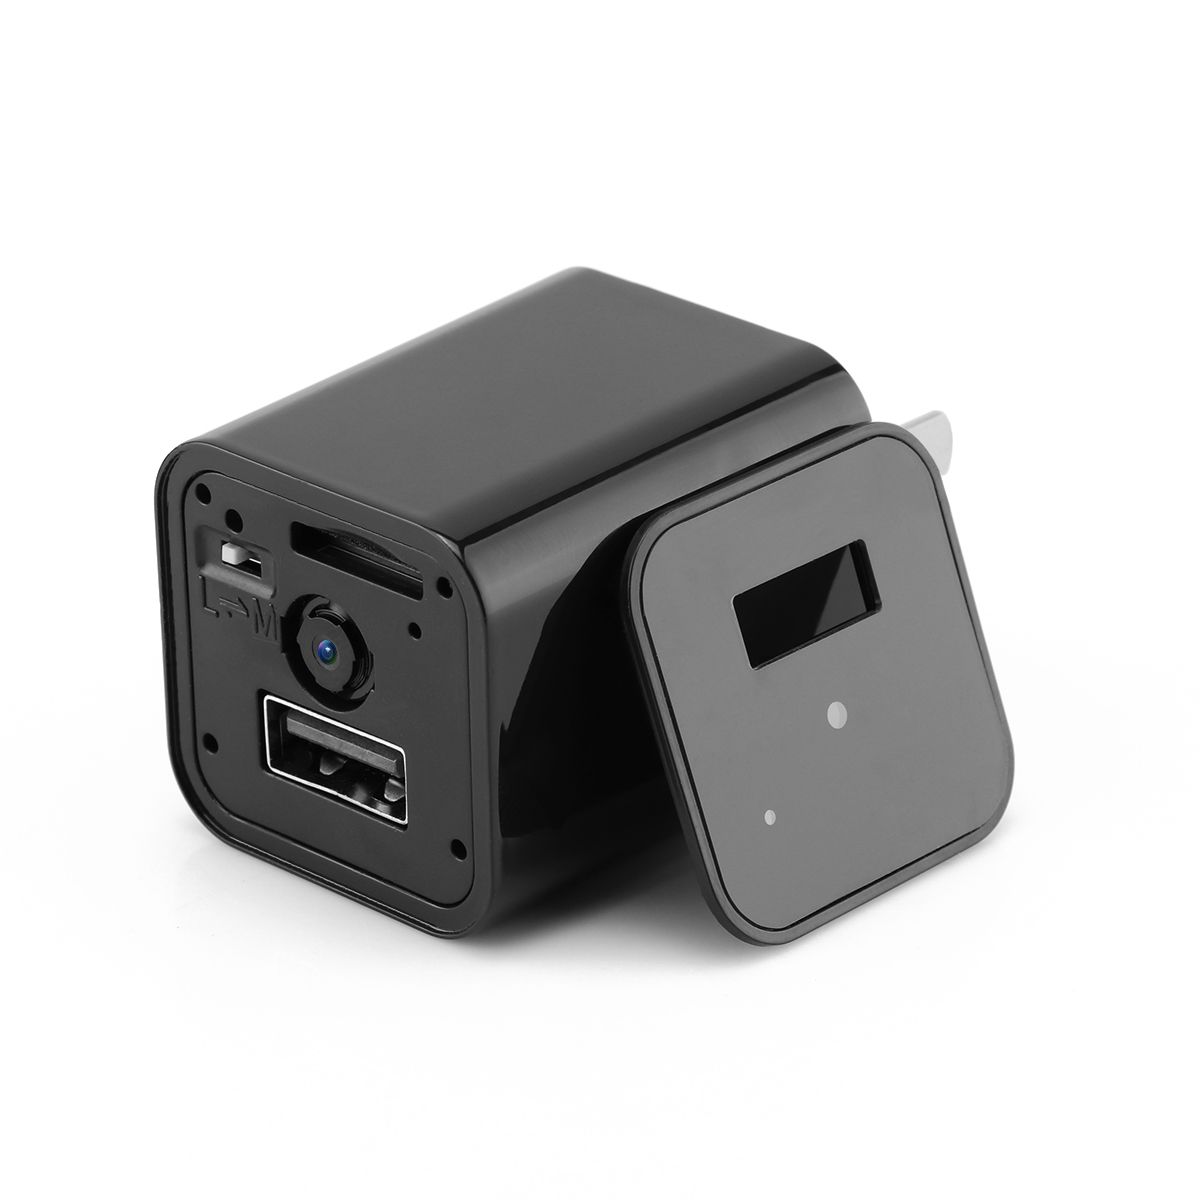 HD 1080P Hidden Camera USB Charger Home Security, PLUG TYPE: EU PLUG